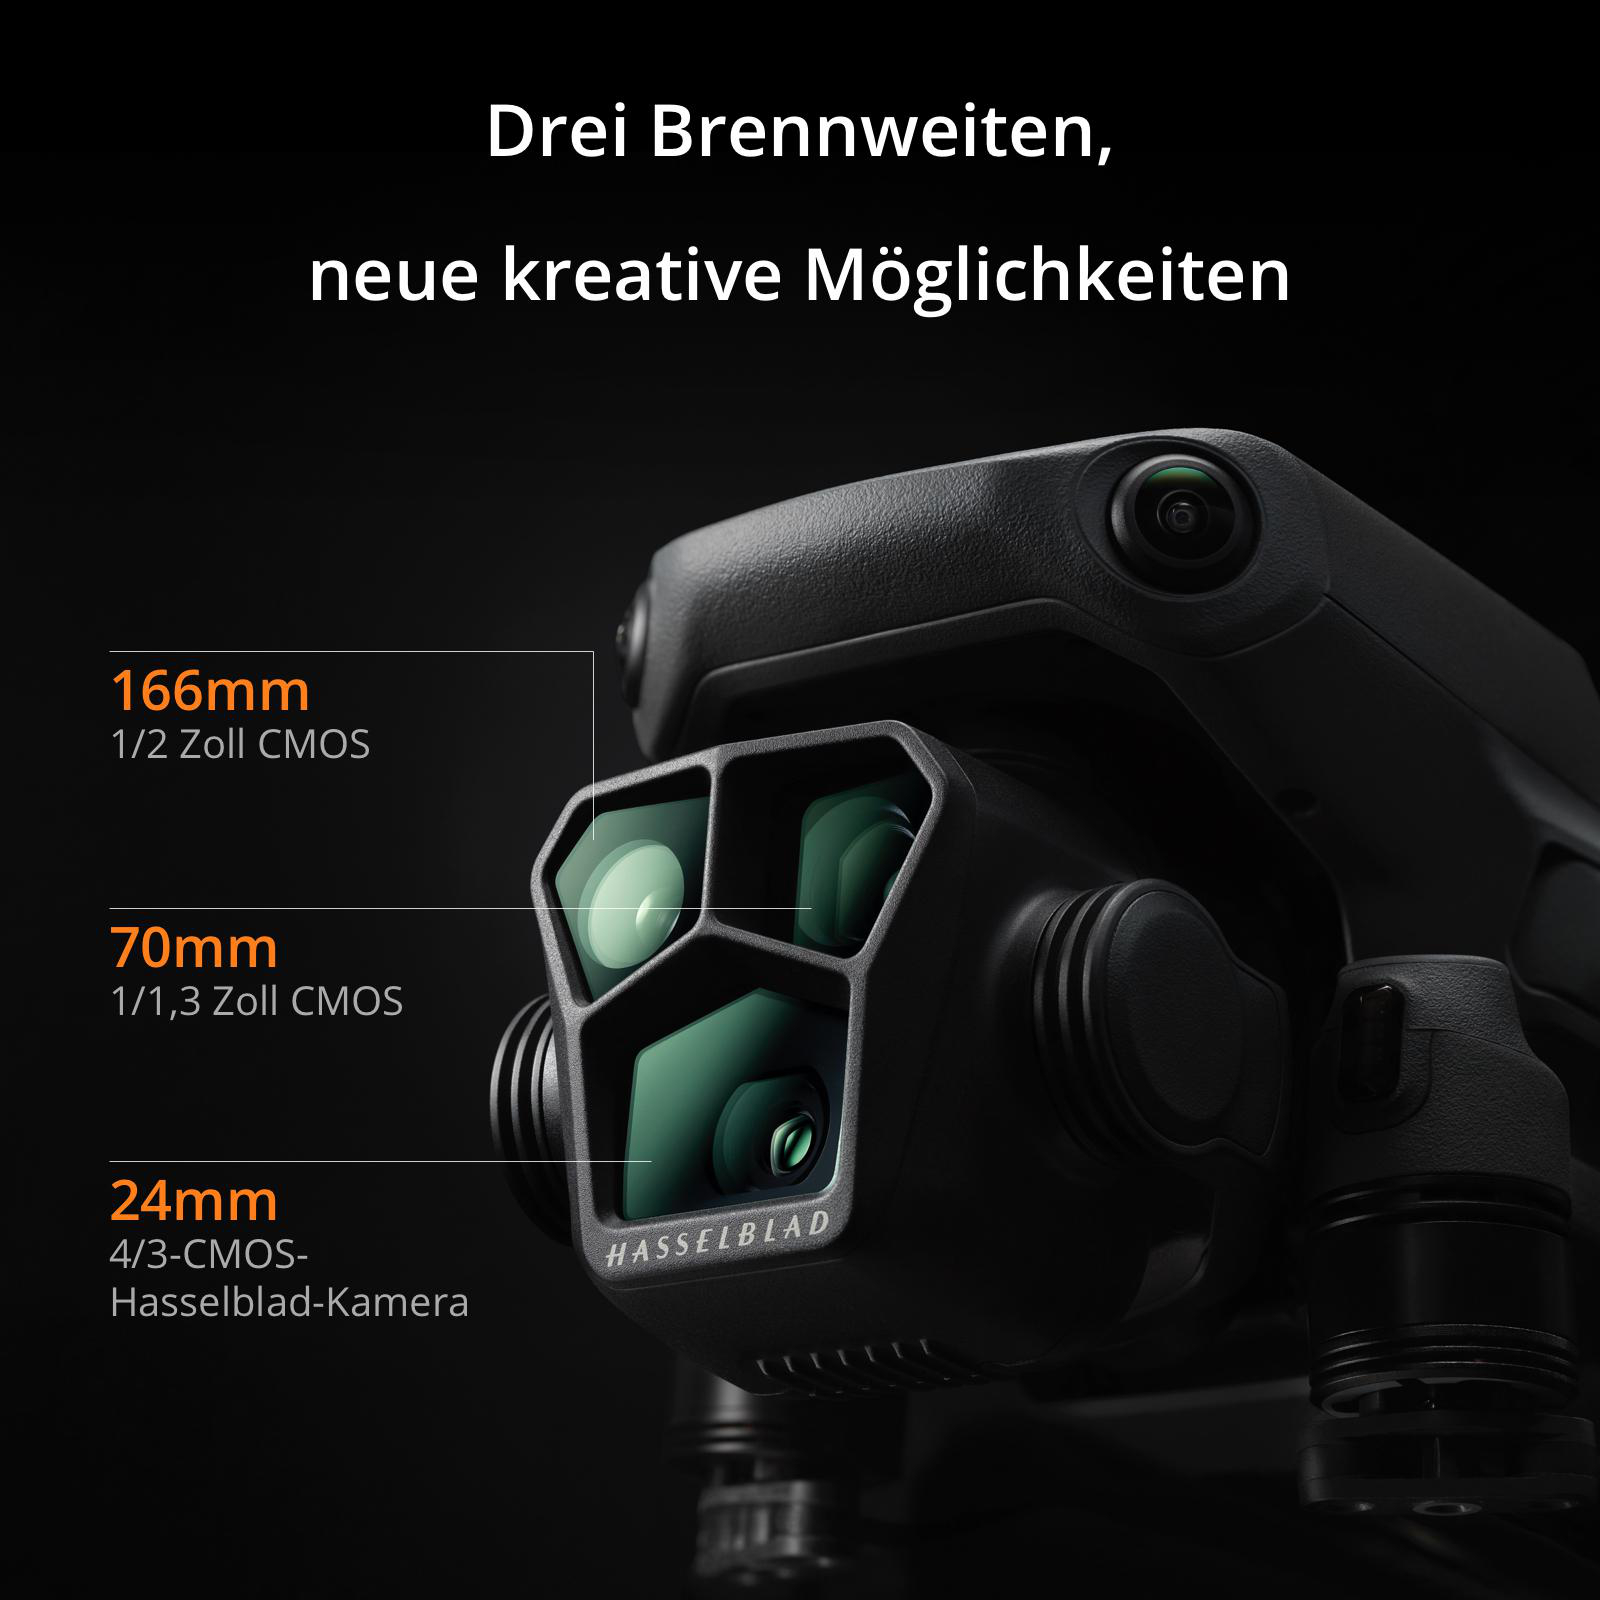 Combo Fly More Drohne, (DJI Pro) Mavic Grau/Schwarz Pro 3 DJI DJI RC